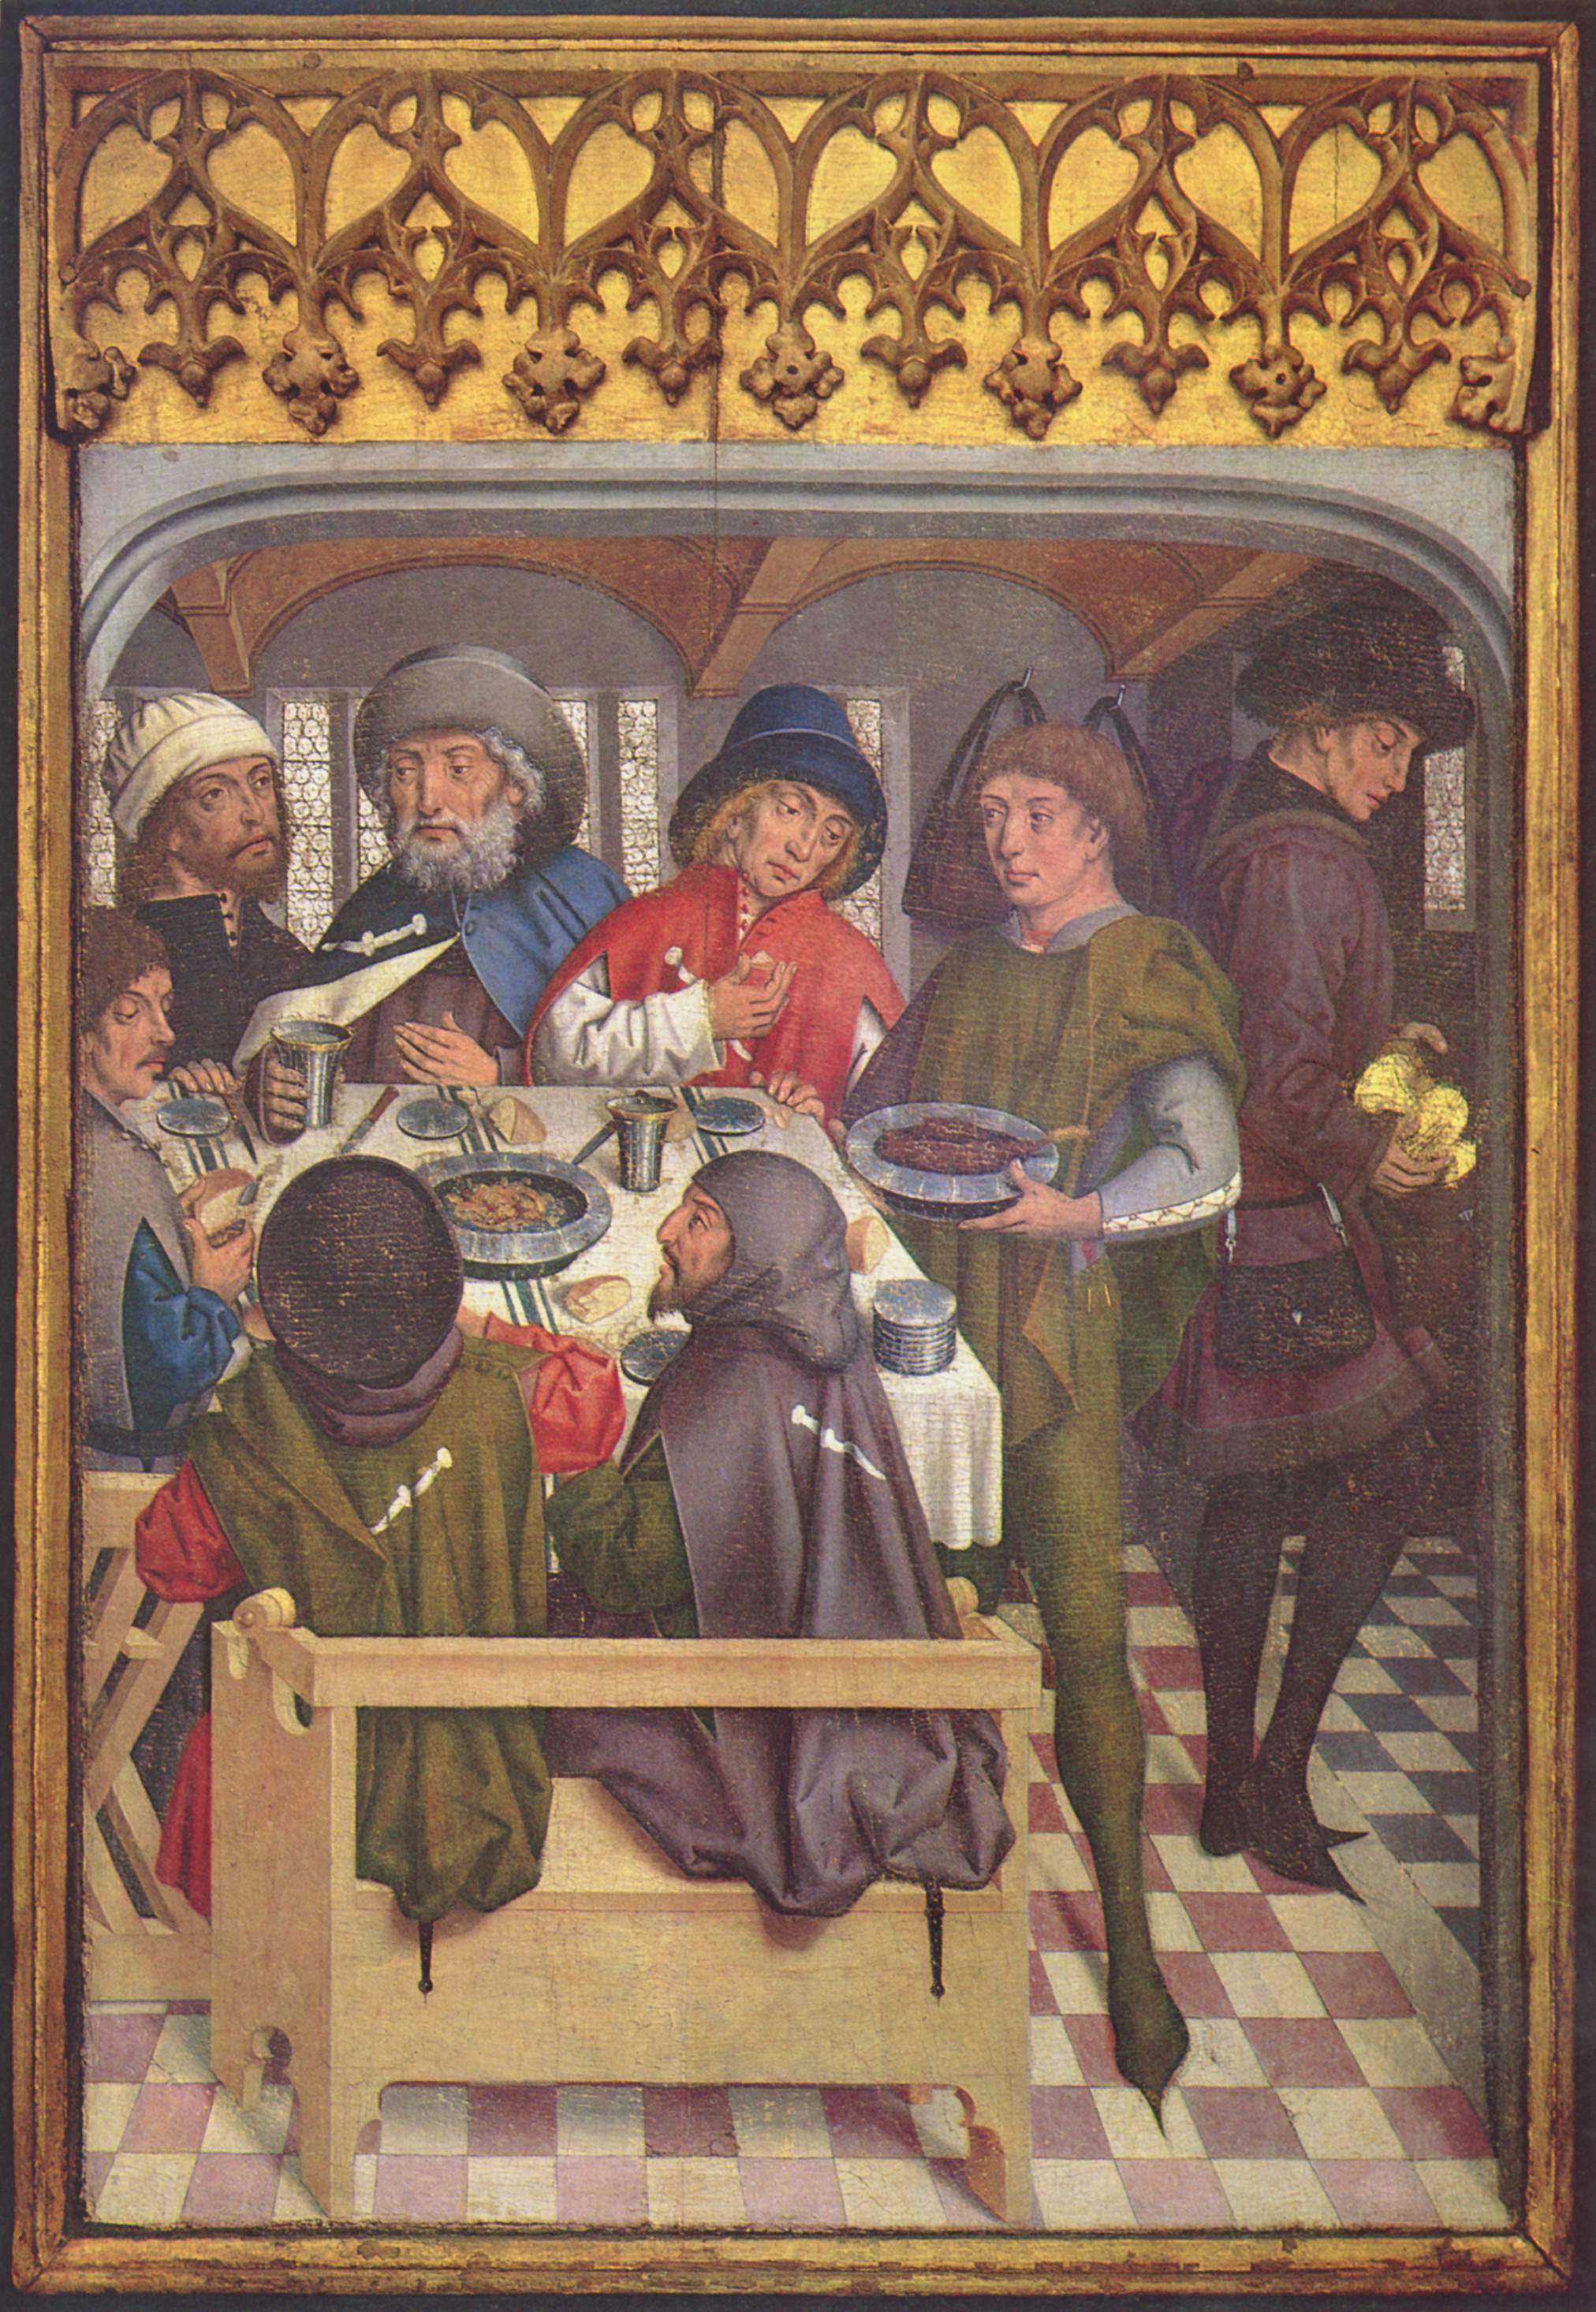 жизнь людей в средние века картинки